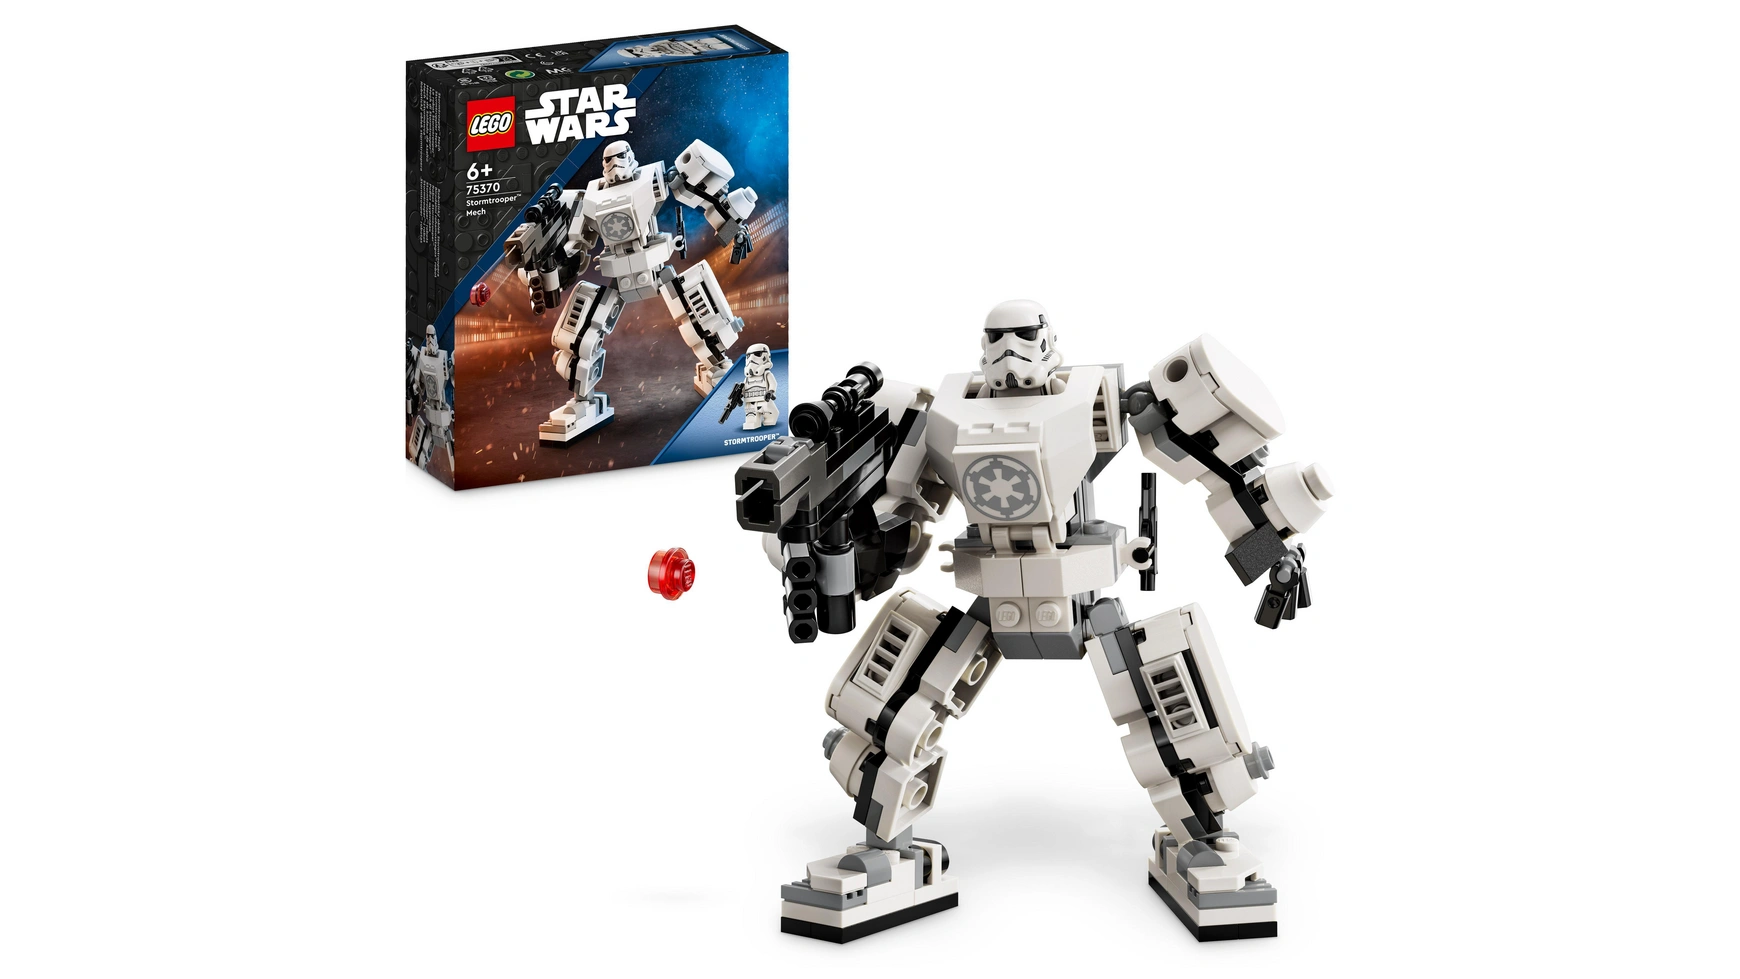 Lego Star Wars Набор роботов-штурмовиков, фигурка, которую нужно собрать хочу лего lego star wars 75370 робот штурмовик